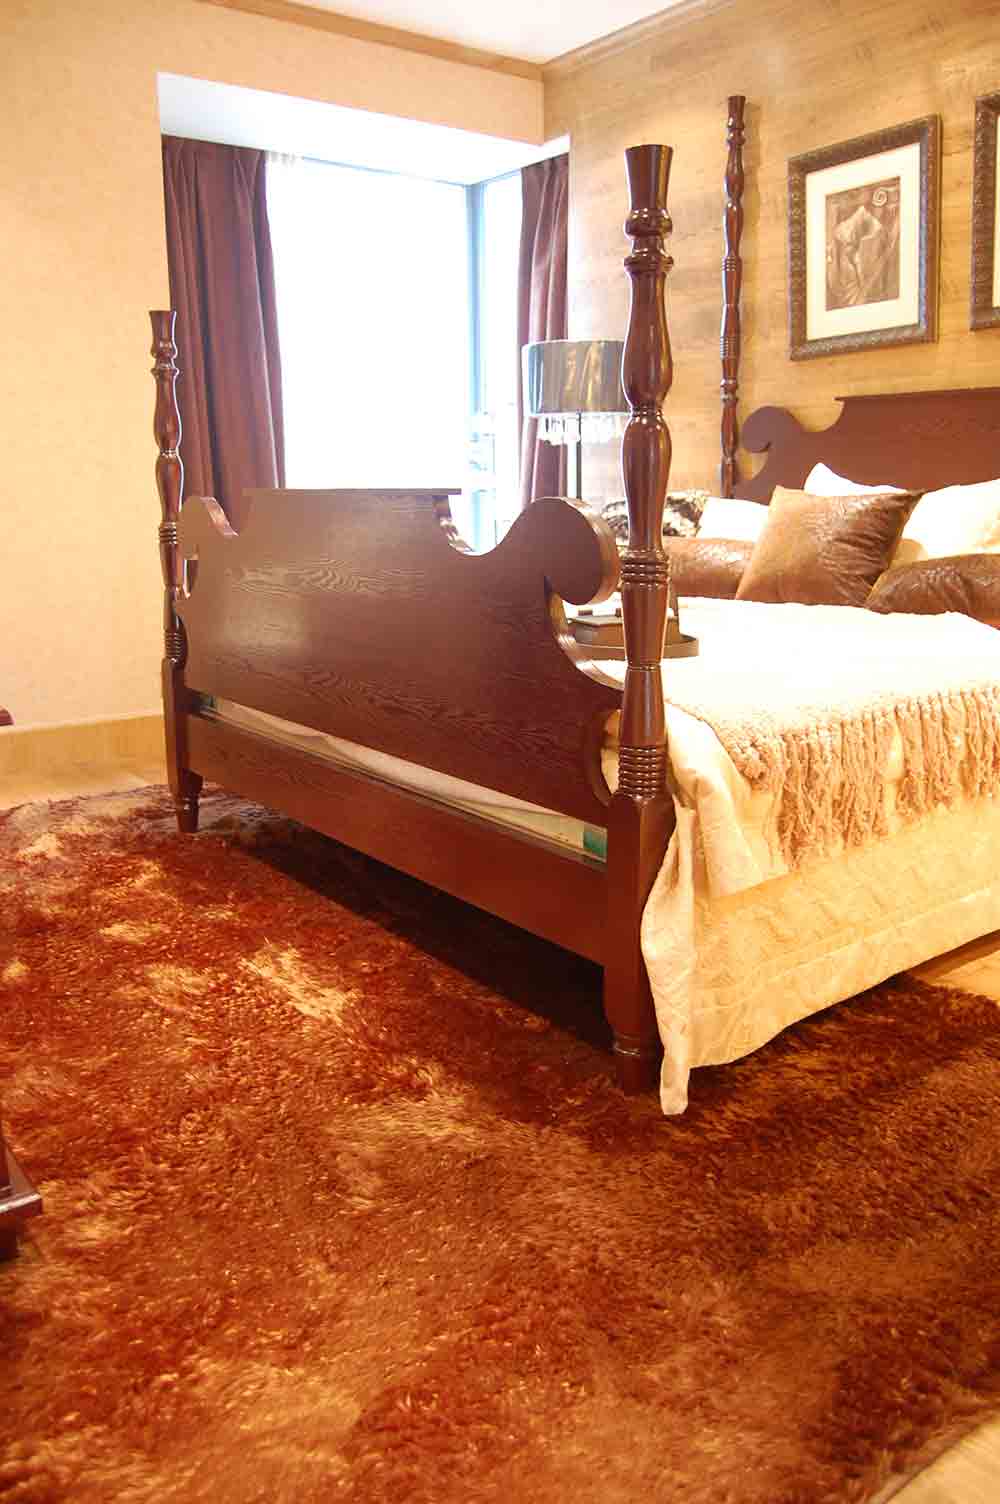 次卧延续着主卧典雅的风格，明清样式的床具把中国风演绎得恰到好处。